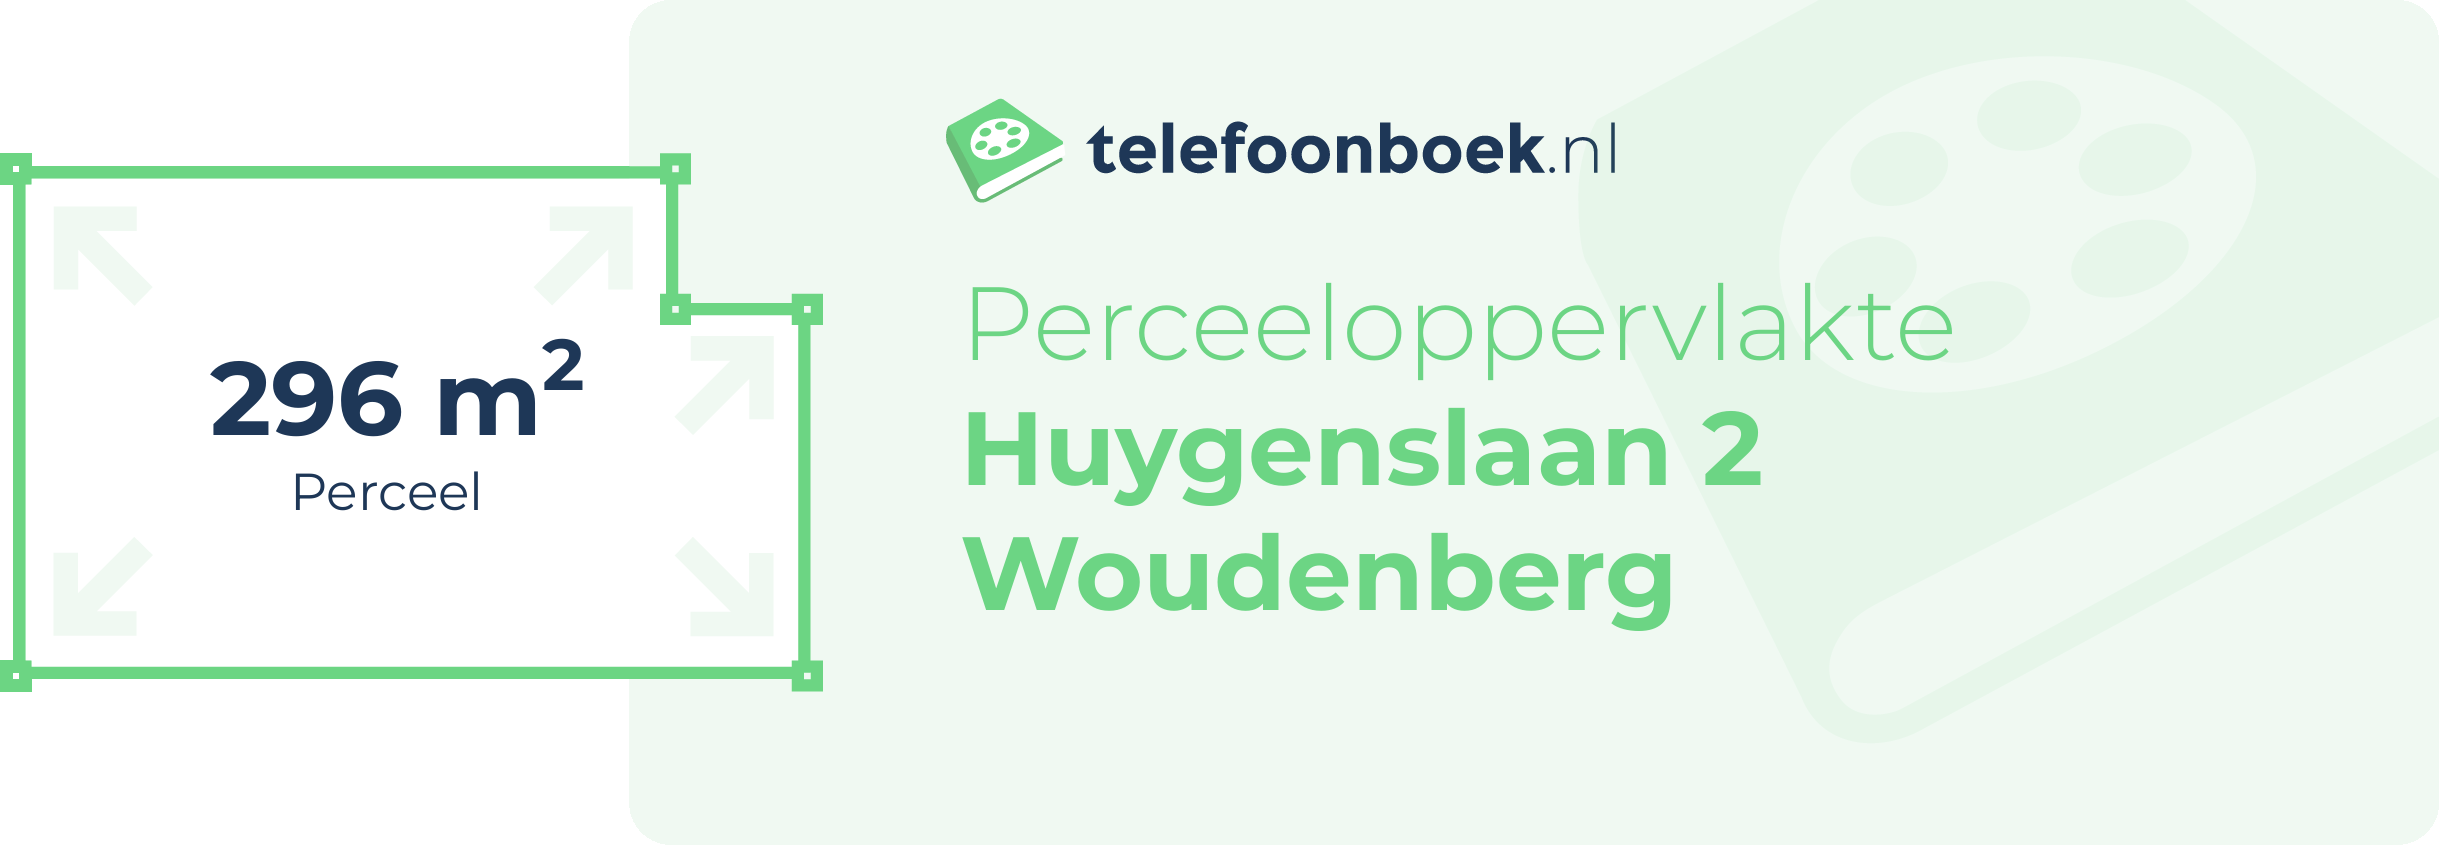 Perceeloppervlakte Huygenslaan 2 Woudenberg